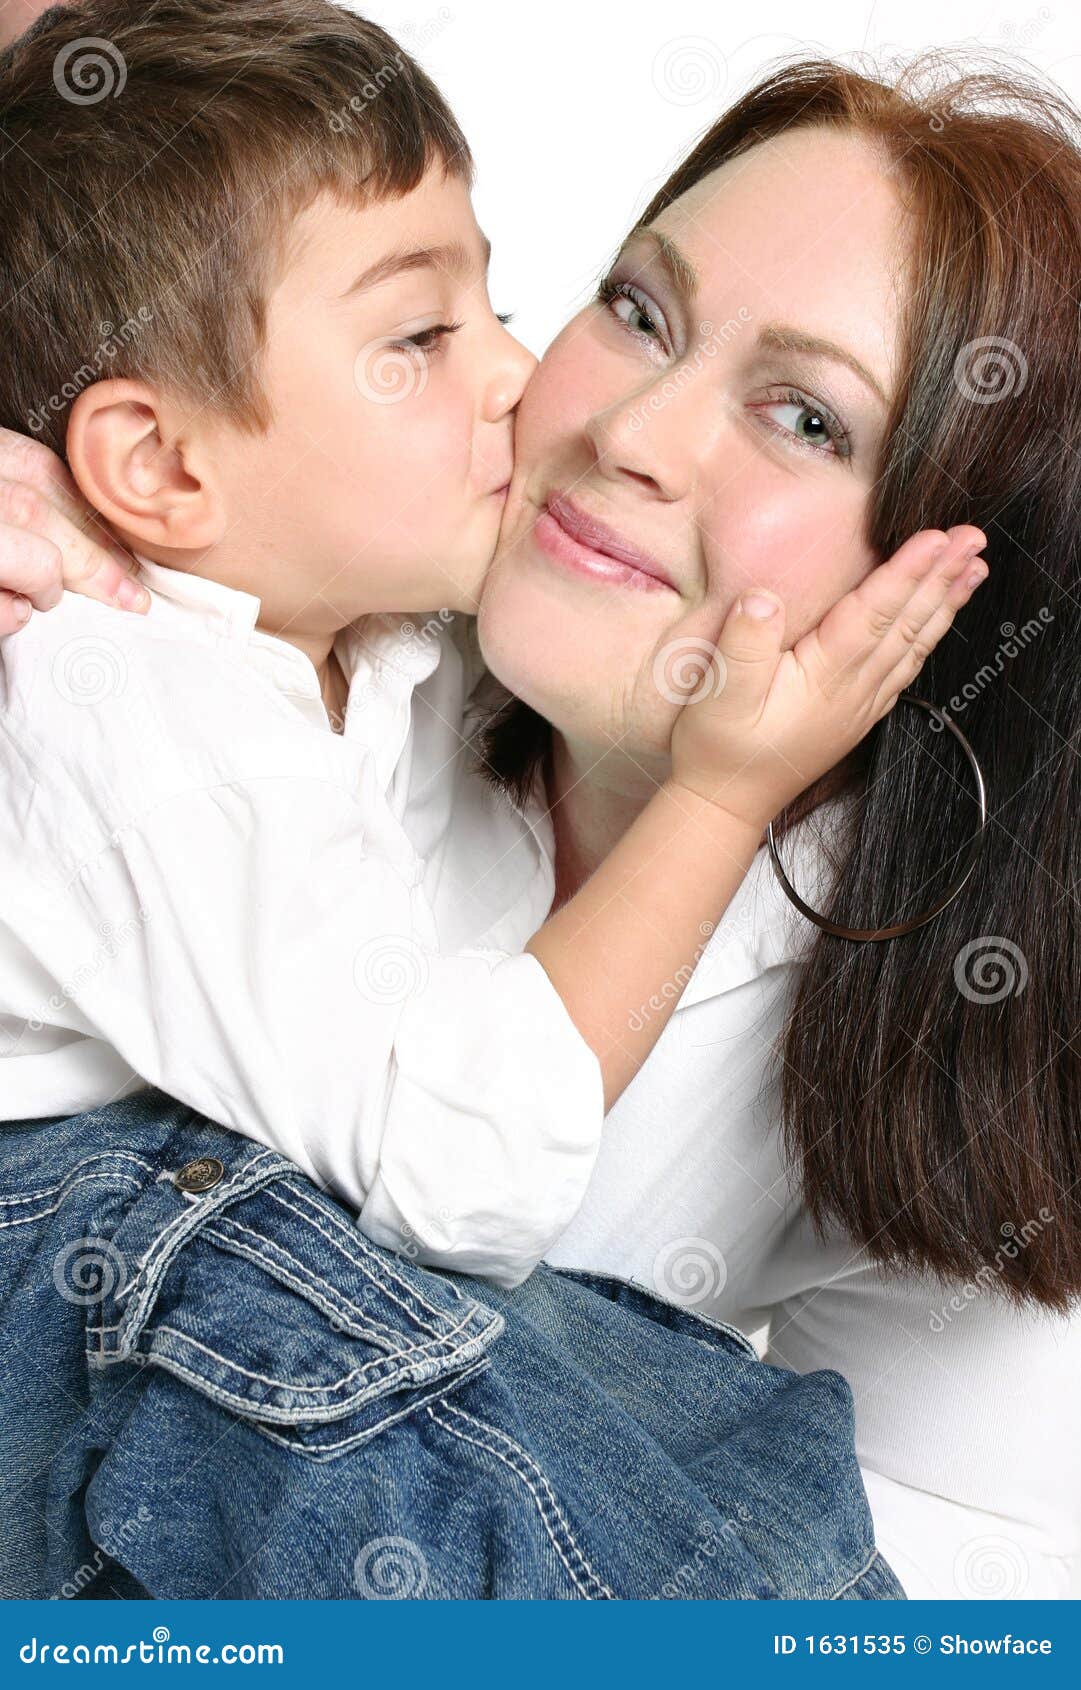 Pdf of mom kissing child